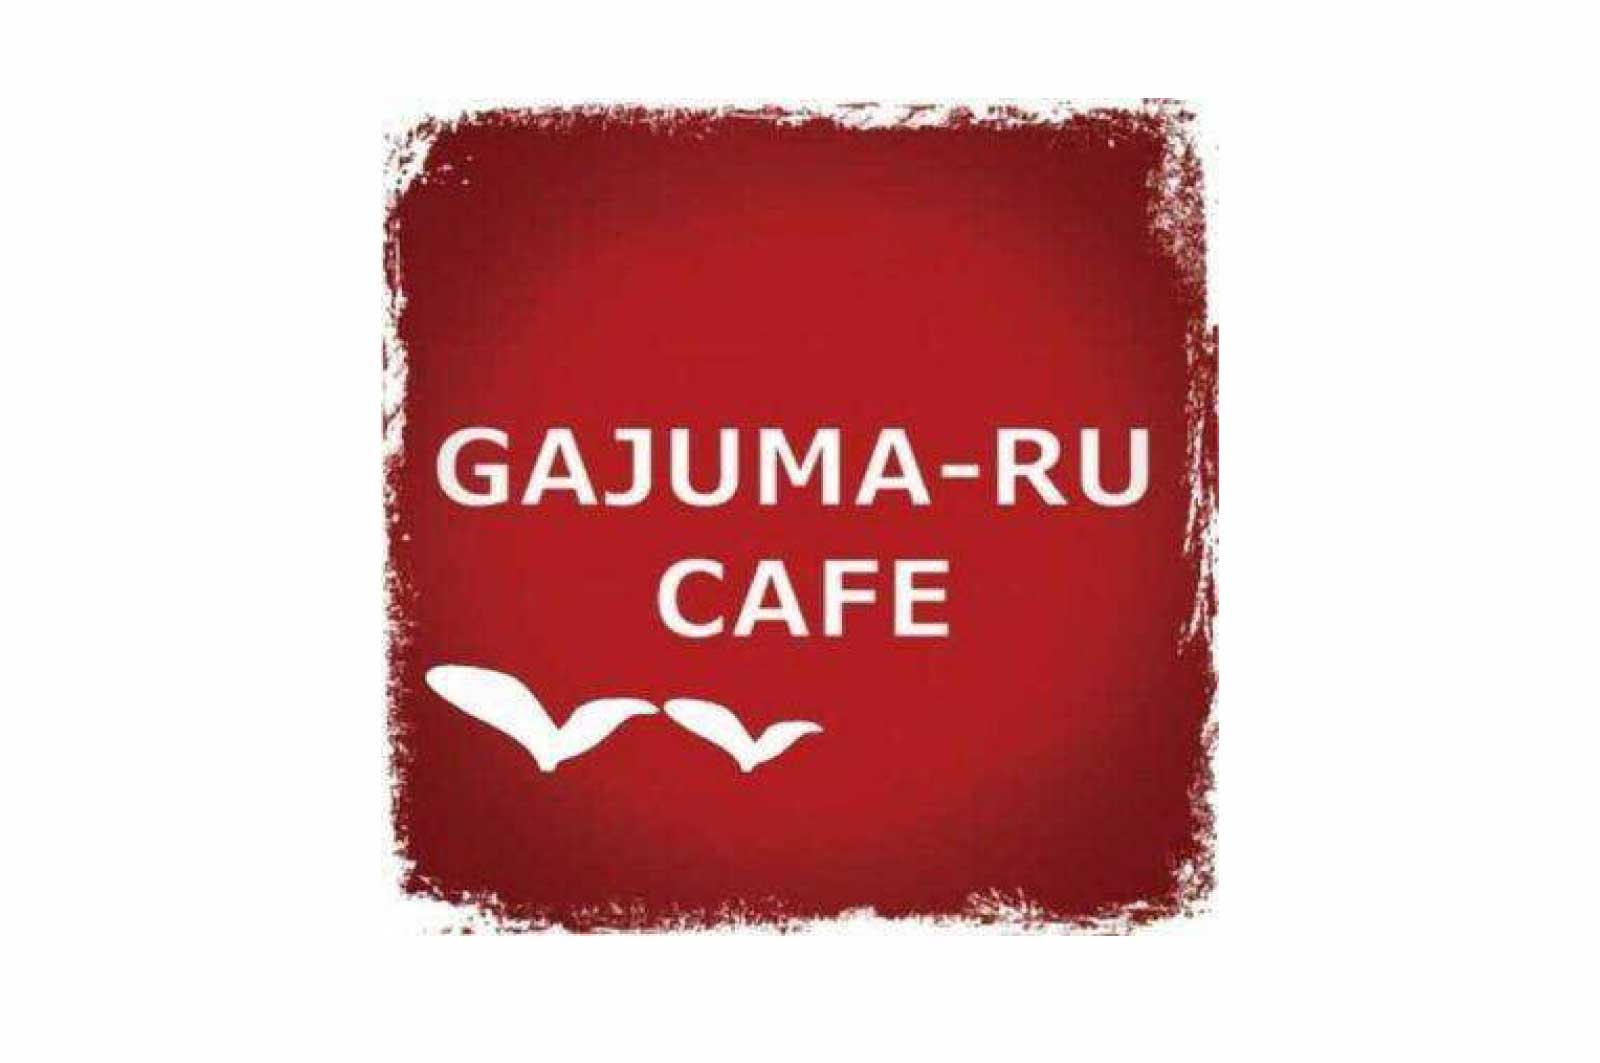 GAJUMA-RU CAFE